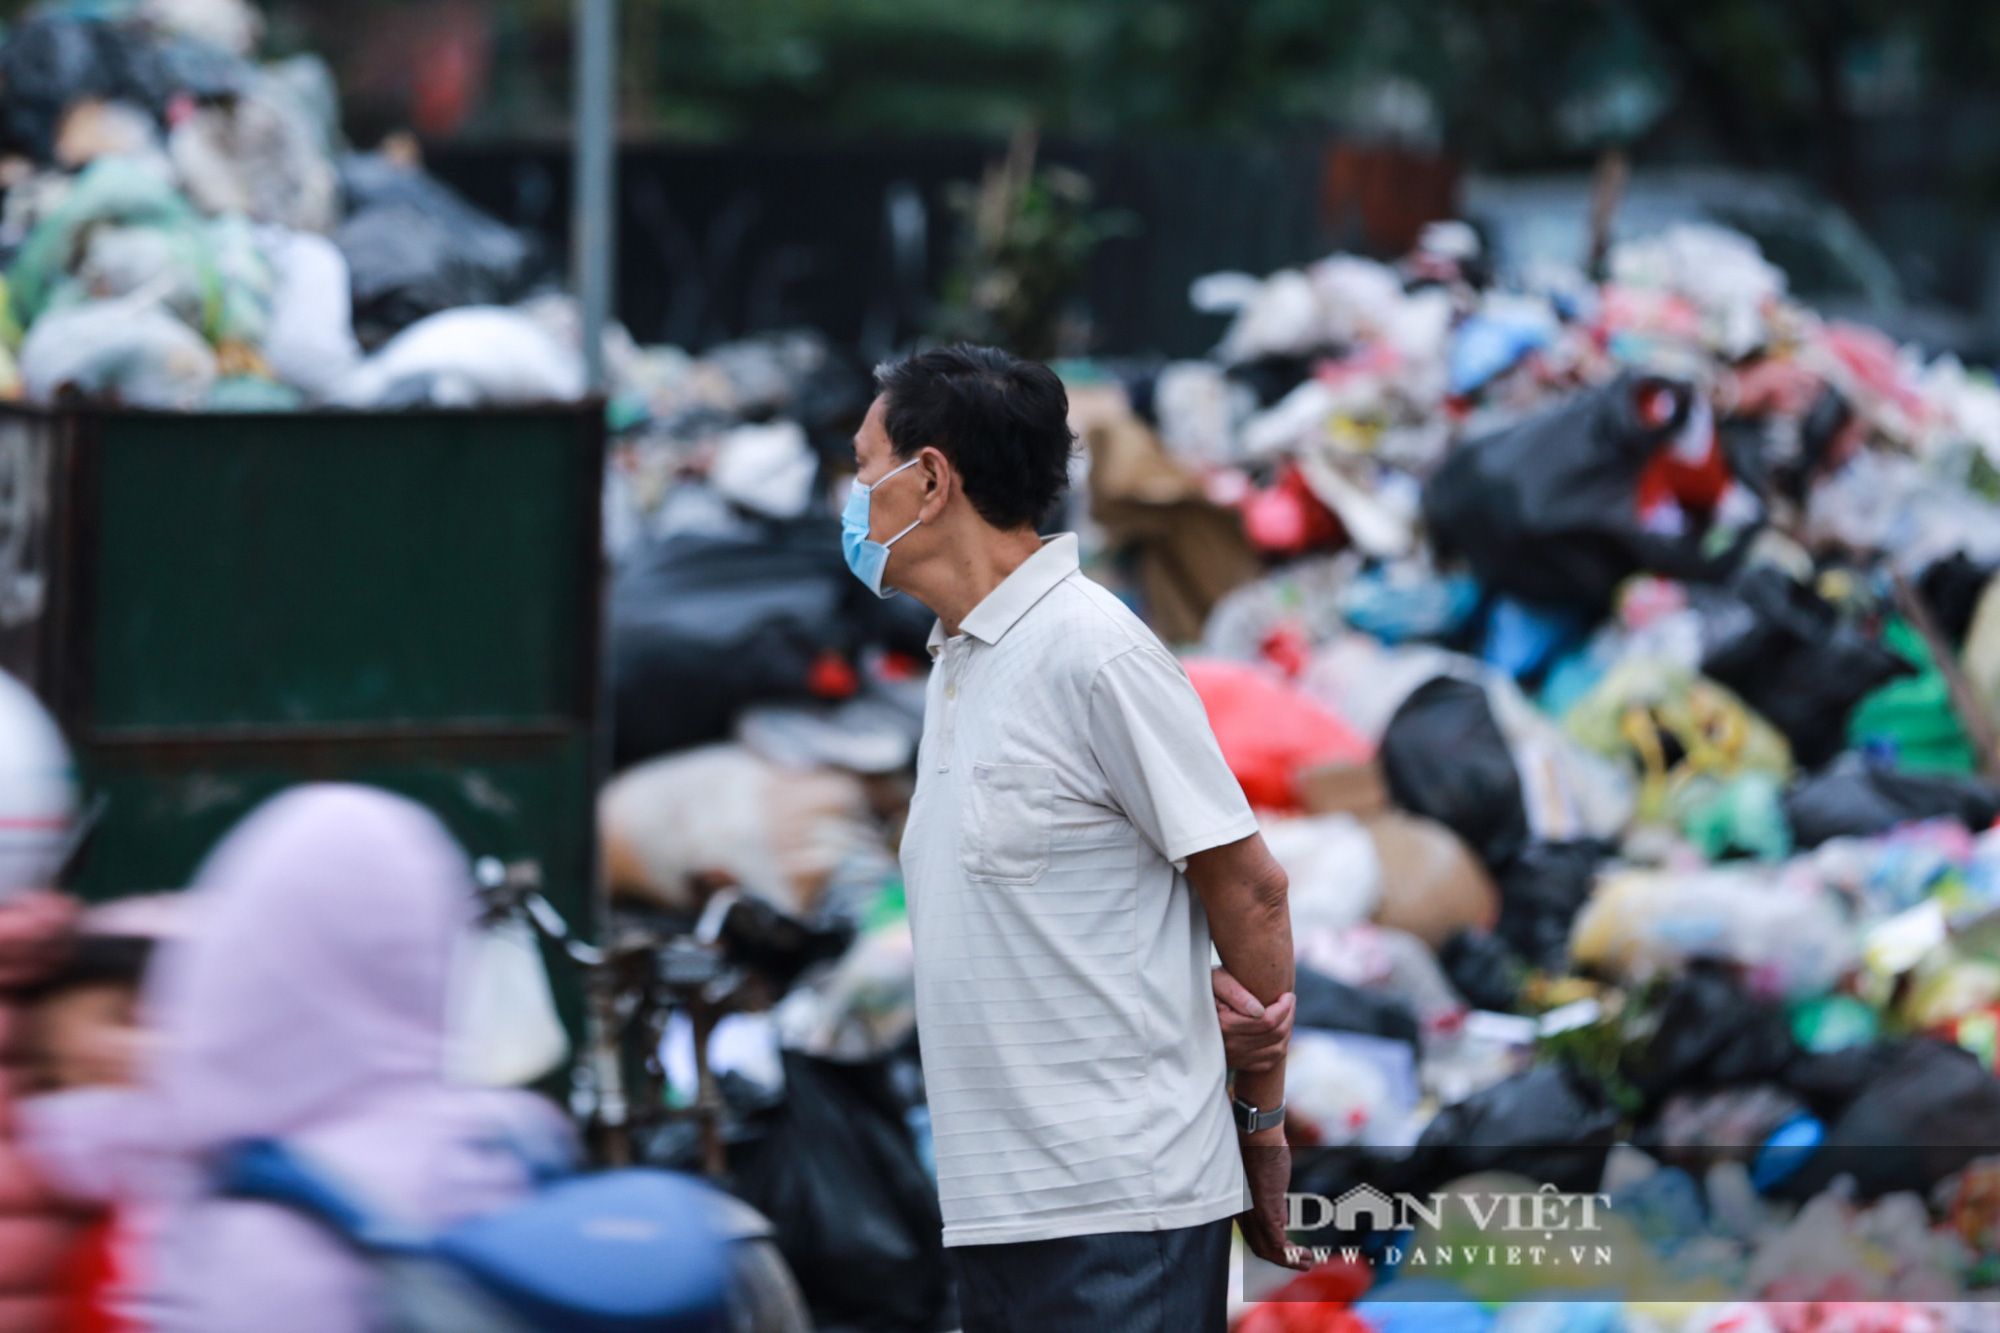 Bãi rác Nam Sơn bị chặn, người dân Hà Nội nín thở đi qua núi rác - Ảnh 10.